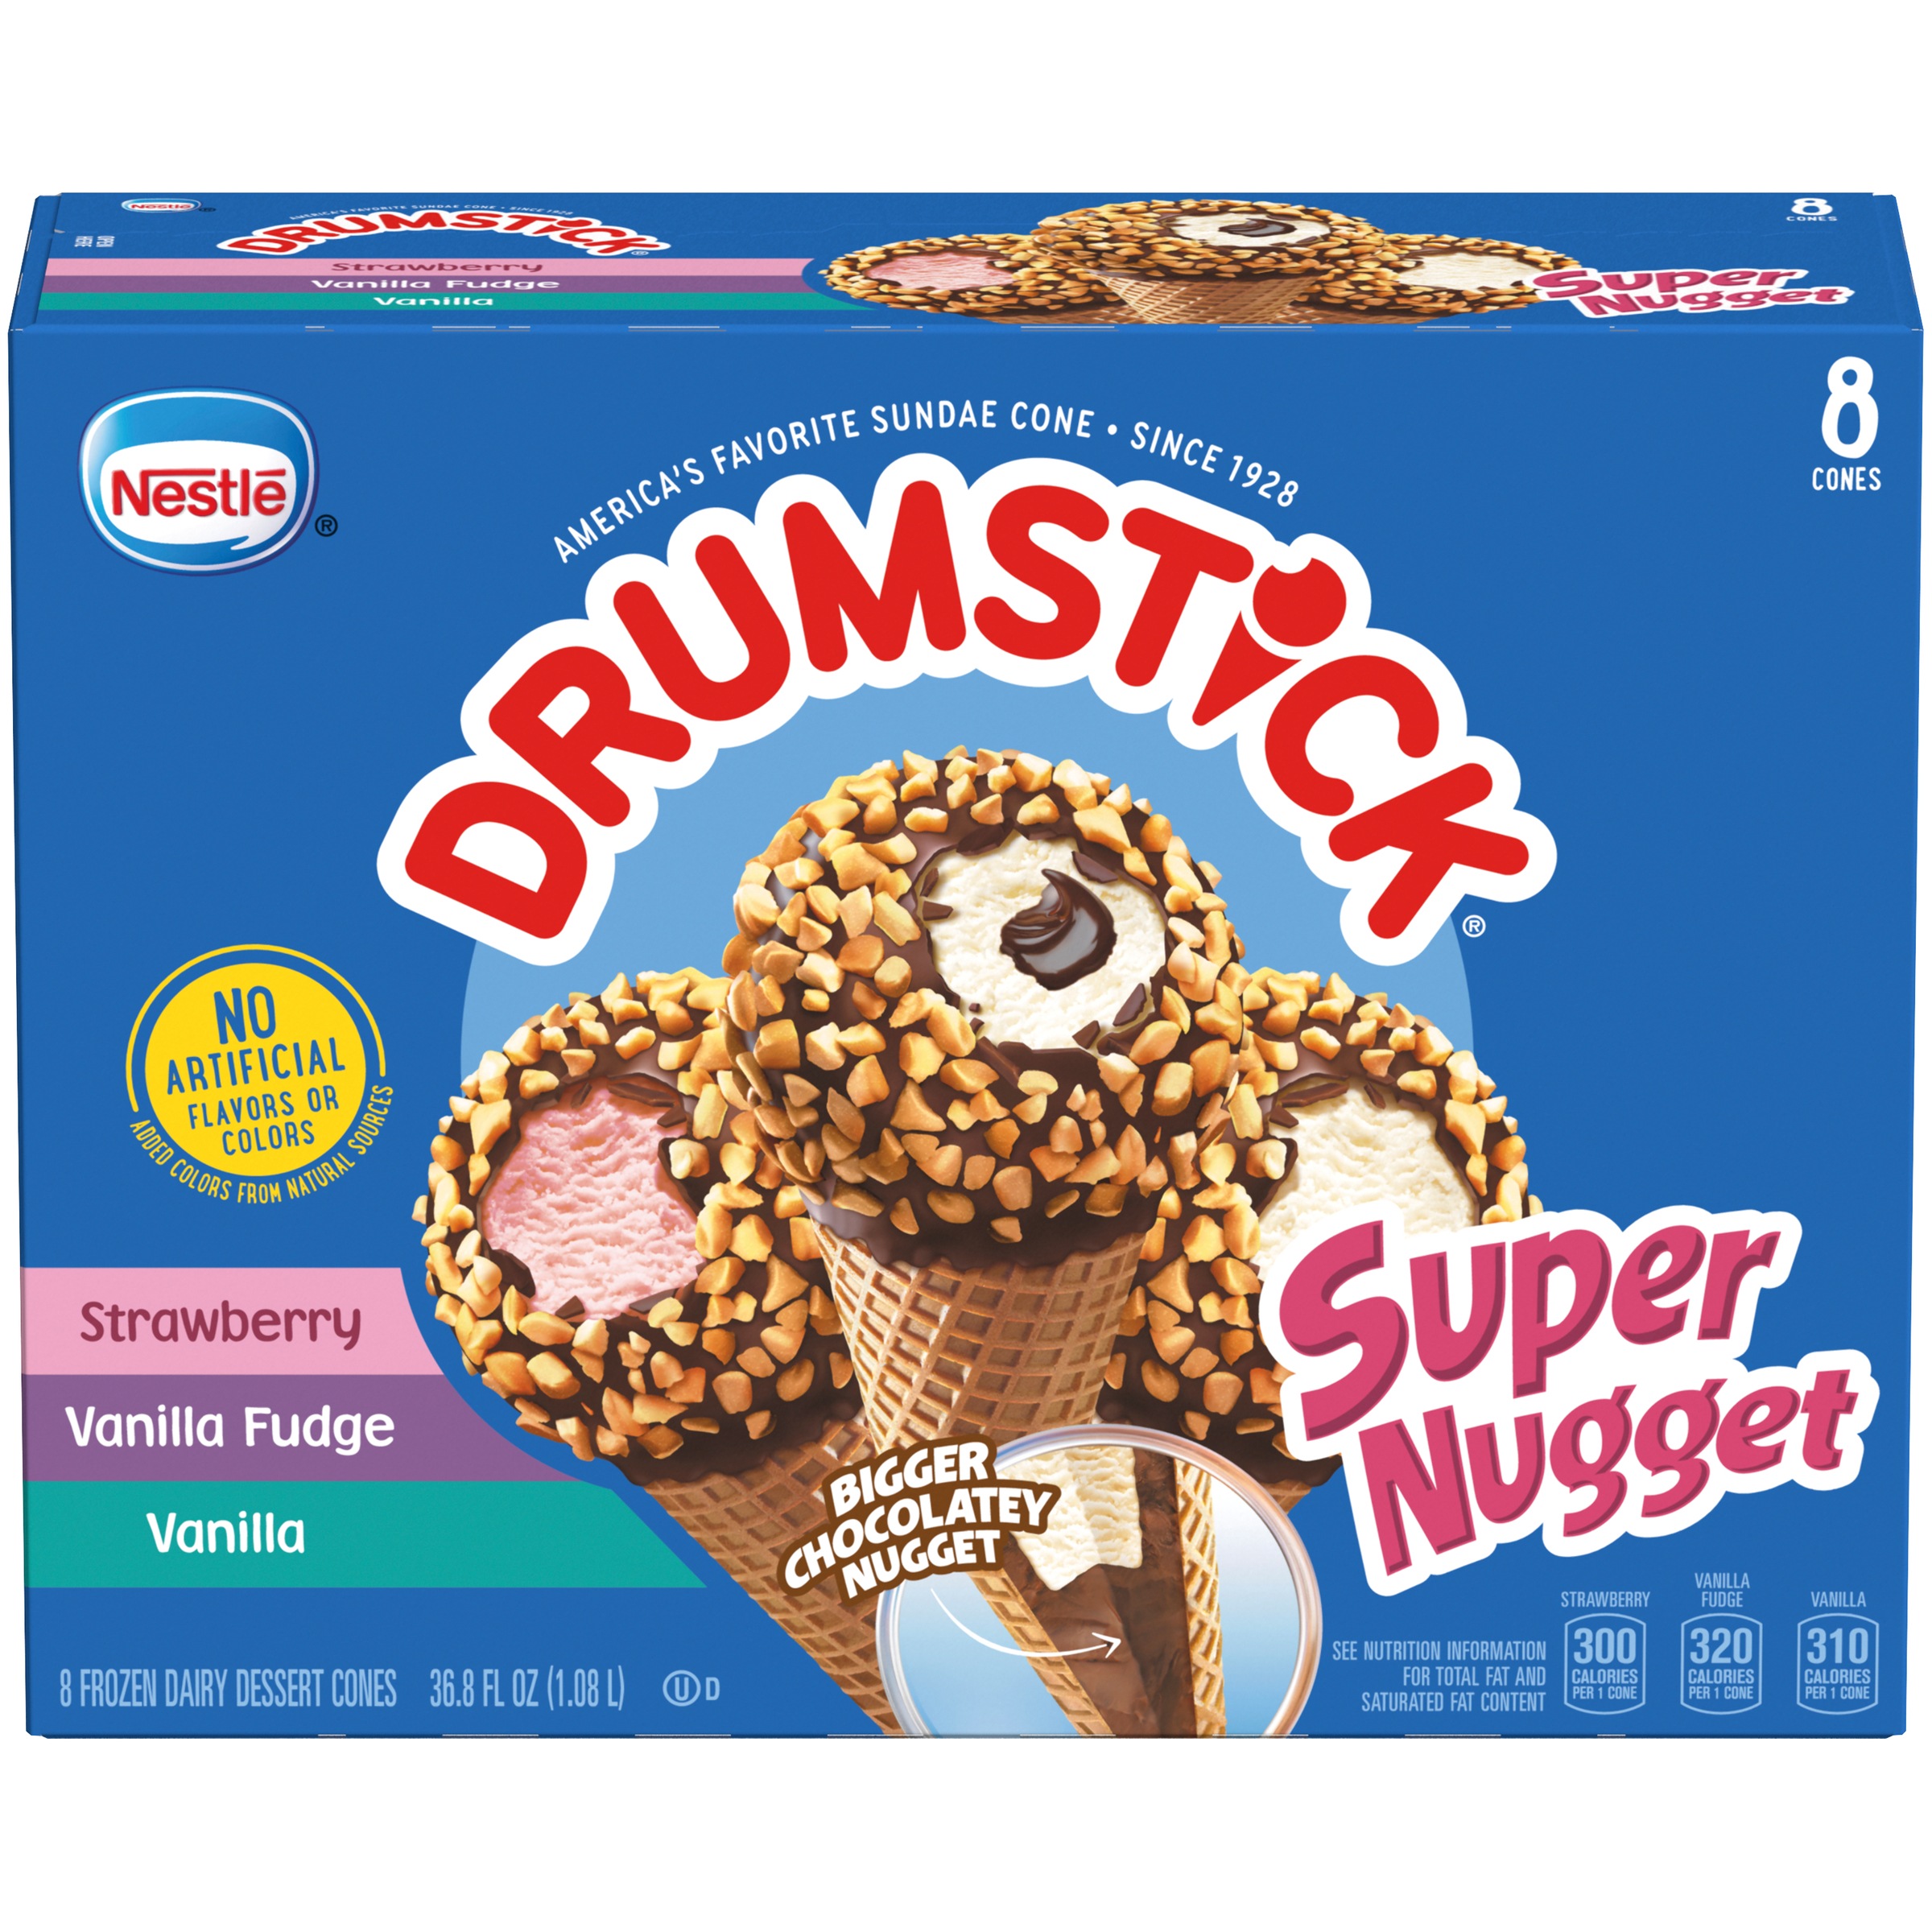 DRUMSTICK SUPER NUGGET Strawberry Vanilla Fudge & Vanilla Frozen Dairy Dessert Cones Variety Pack 8 ct Box